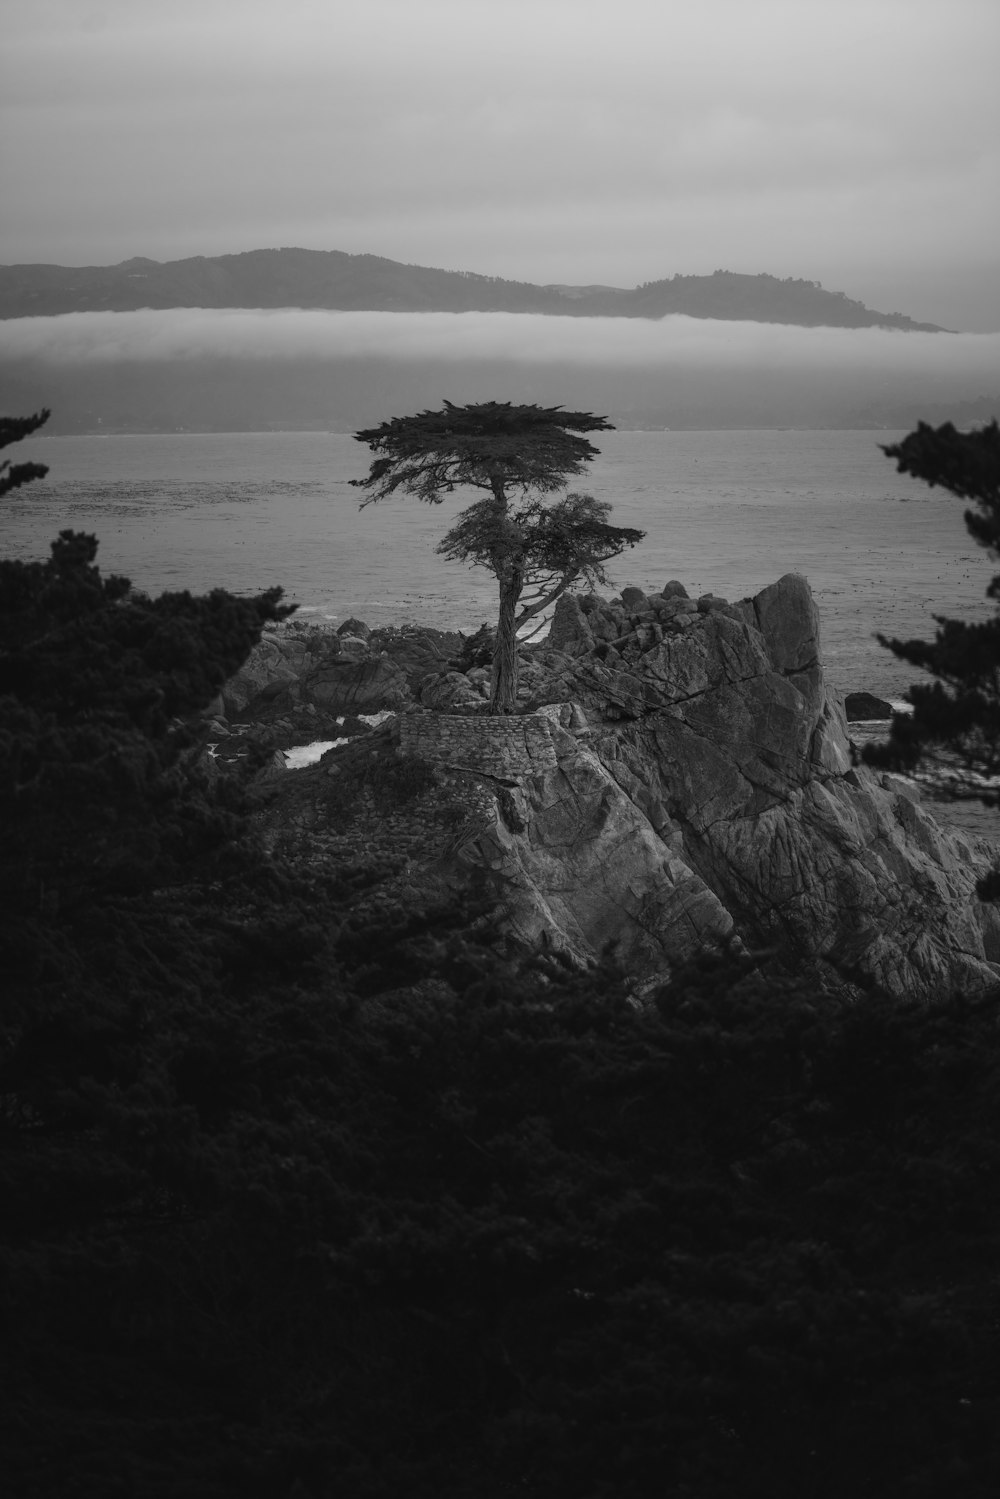 a tree on a rocky shore